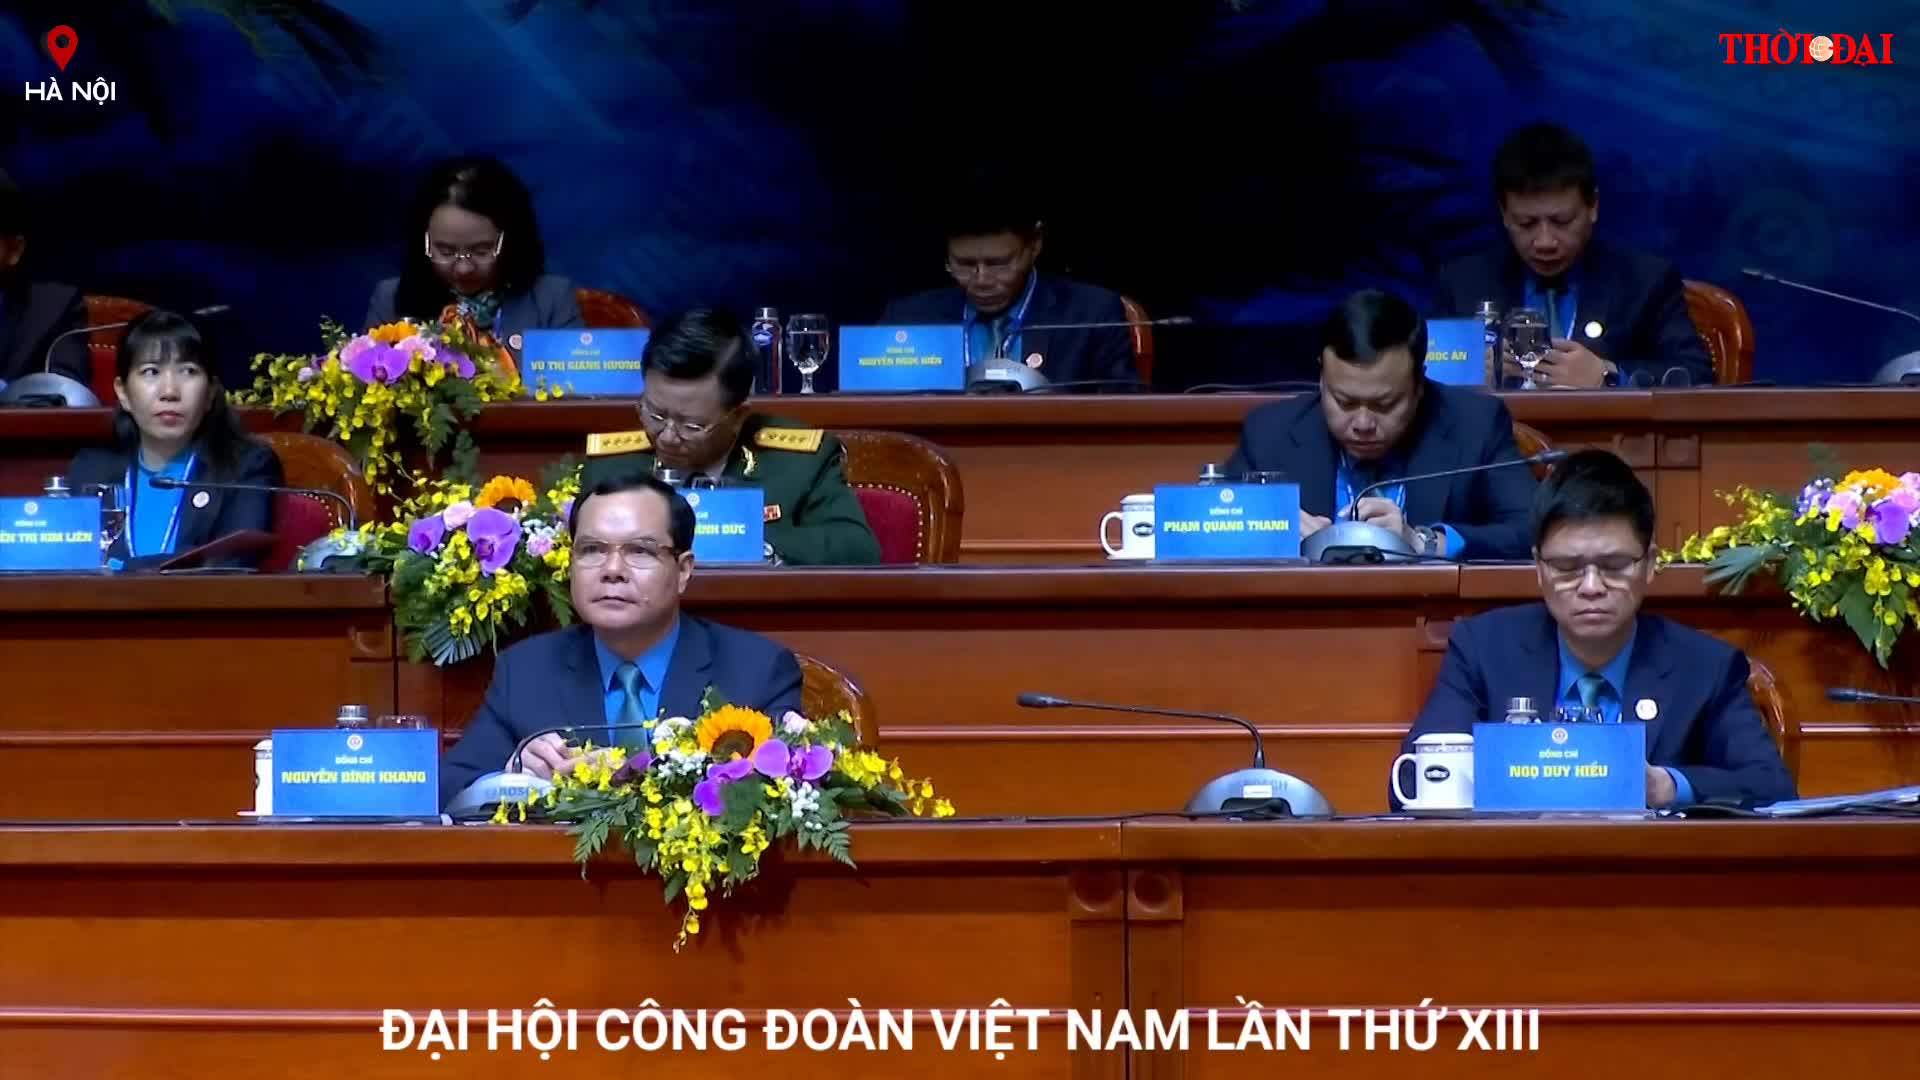 Ngày làm việc đầu tiên của Đại hội Công đoàn Việt Nam lần thứ XIII